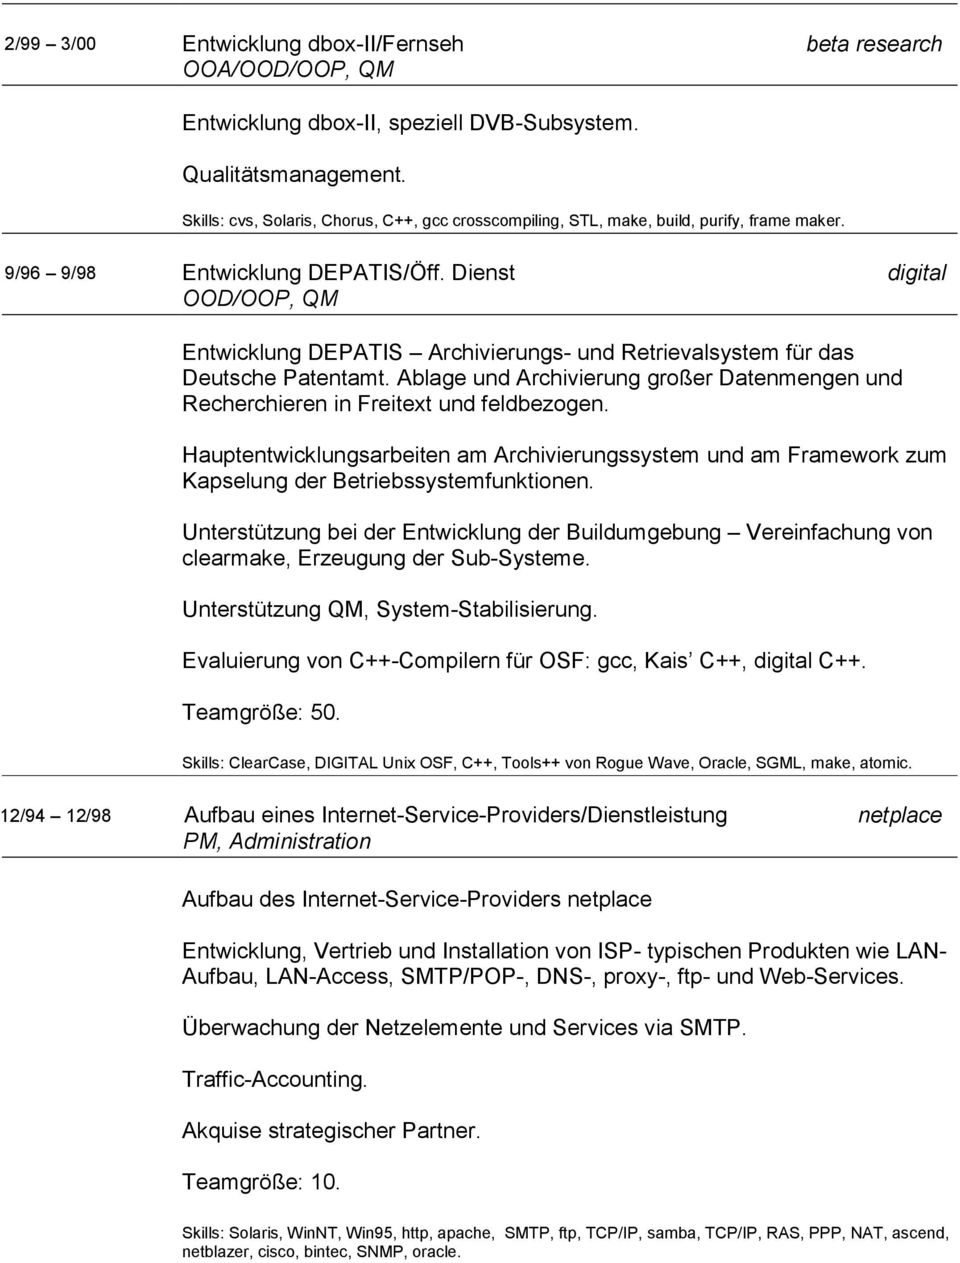 Dienst digital OOD/OOP, QM Entwicklung DEPATIS Archivierungs- und Retrievalsystem für das Deutsche Patentamt. Ablage und Archivierung großer Datenmengen und Recherchieren in Freitext und feldbezogen.